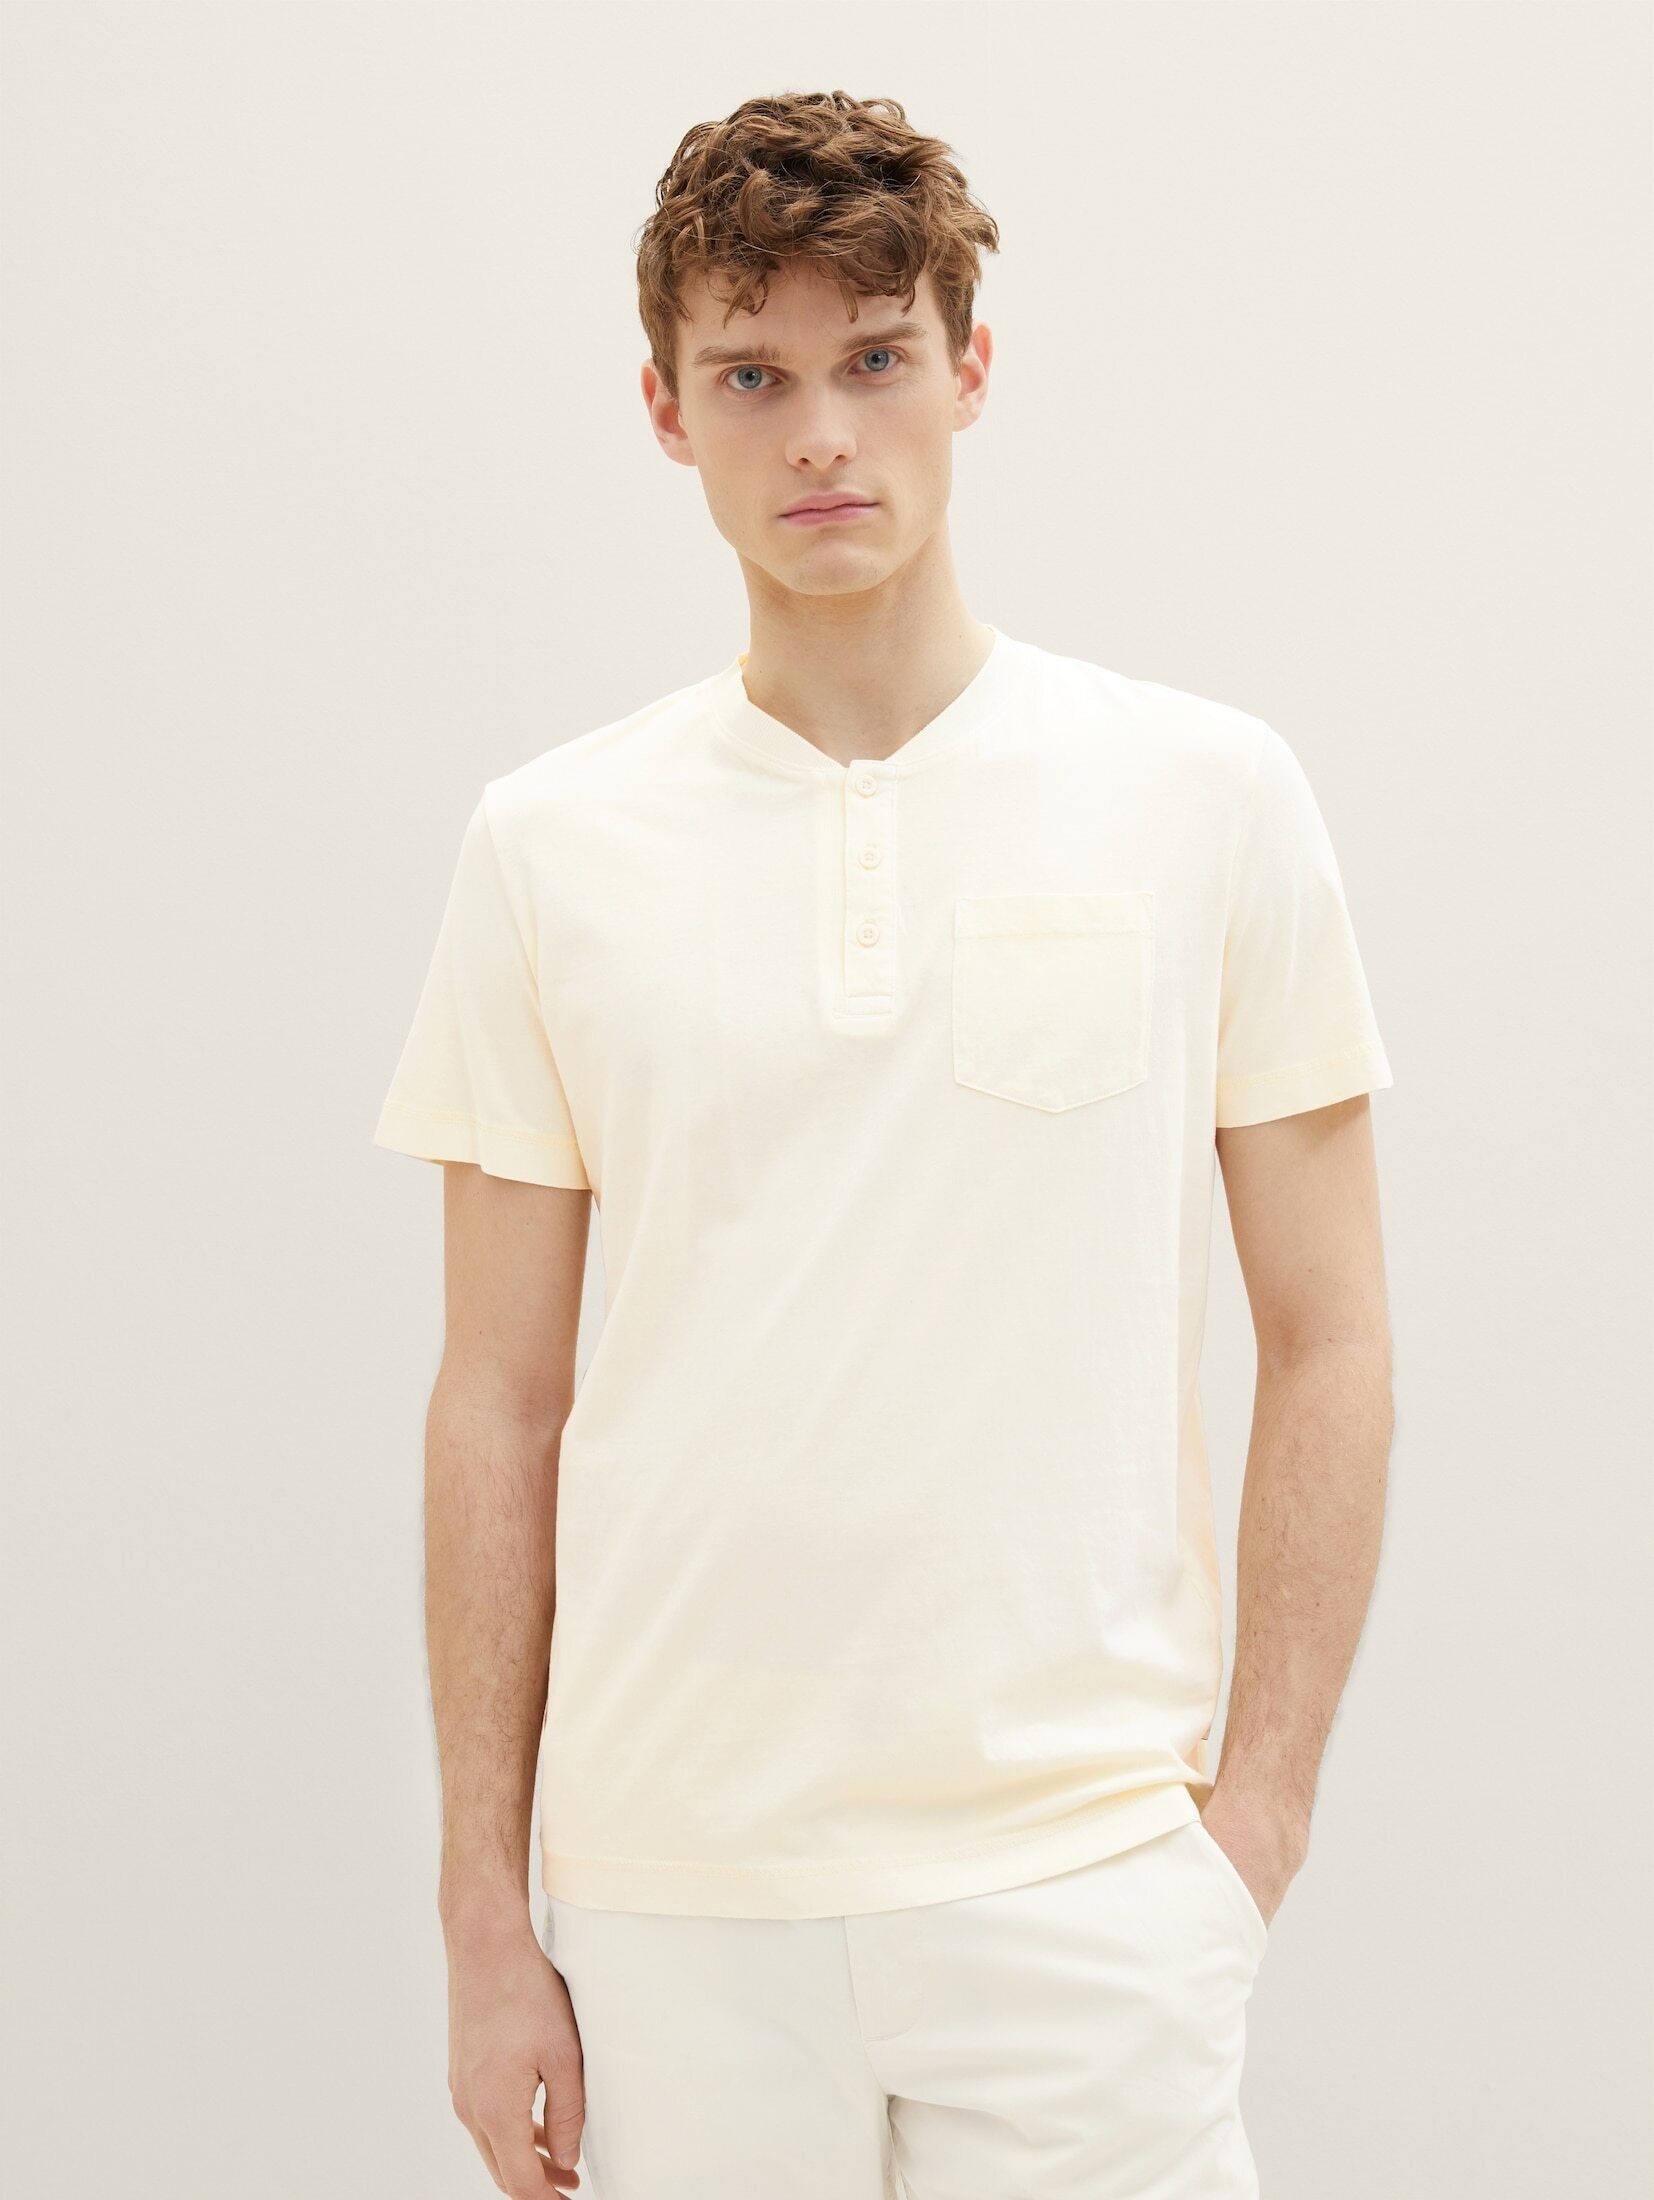 Waschung TAILOR T-Shirt vintage starker TOM mit beige T-Shirt